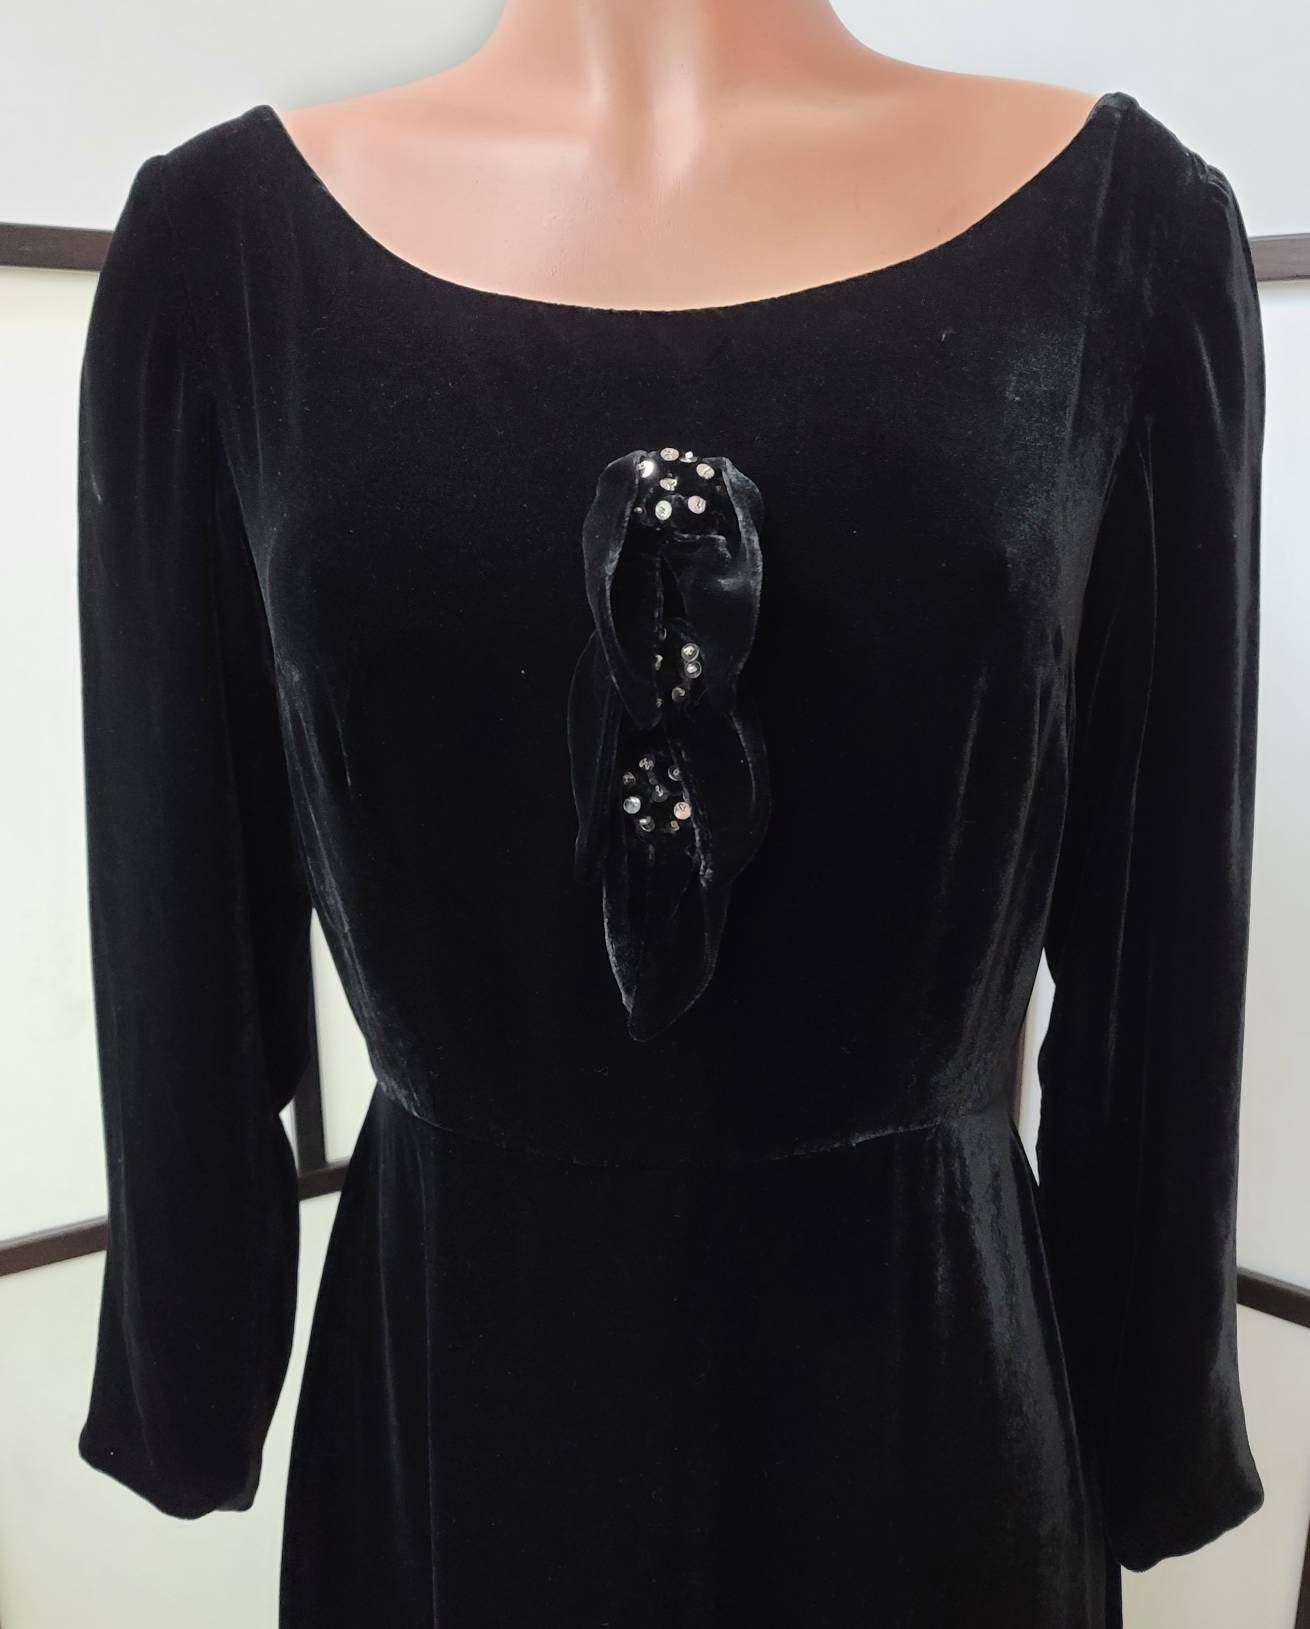 Vintage Velvet Dress 1960s 70s Long Black Silk Rayon Velvet Gown Gothic Boho M